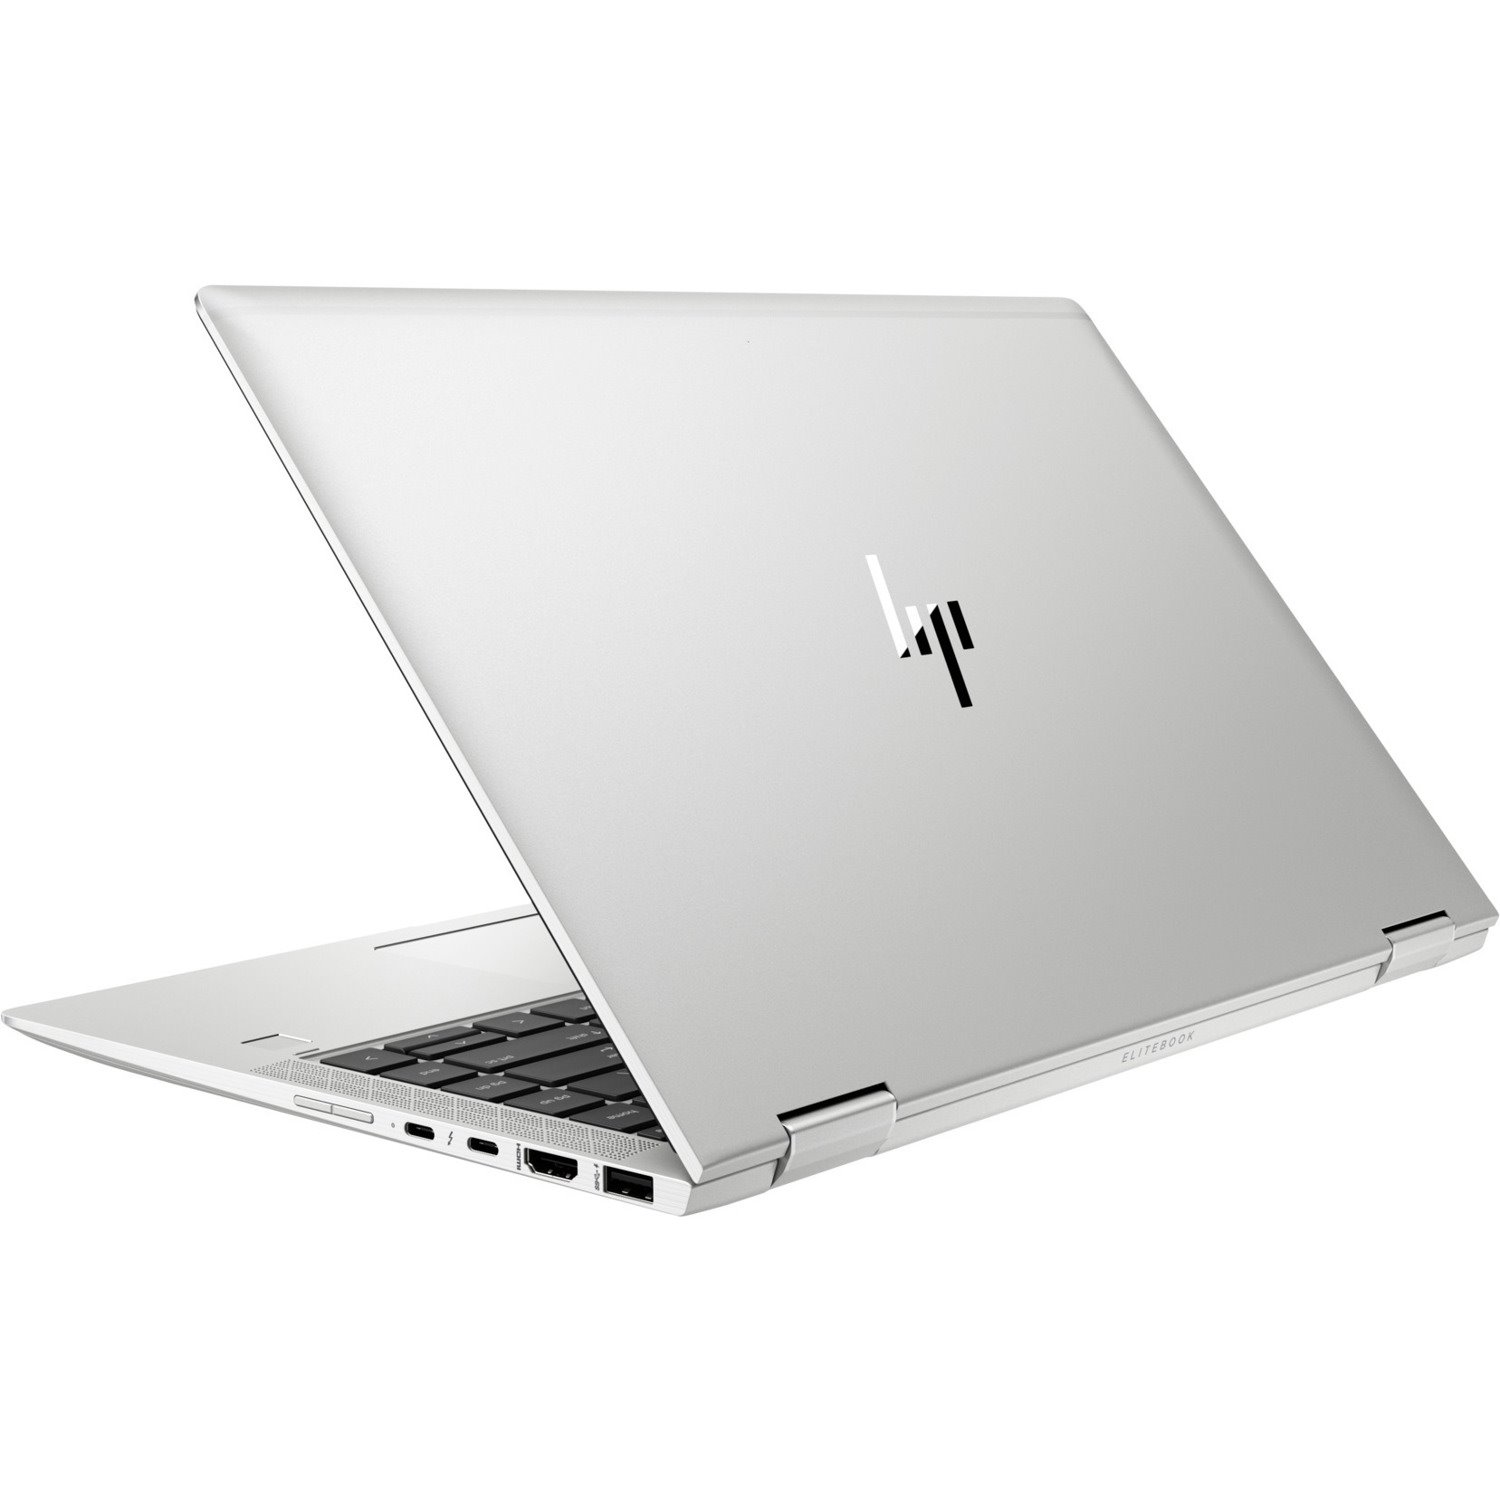 HP EliteBook x360 1040 G6 14" Touchscreen Convertible 2 in 1 Notebook - 1920 x 1080 - Intel Core i5 8th Gen i5-8265U Quad-core (4 Core) 1.60 GHz - 8 GB Total RAM - 256 GB SSD